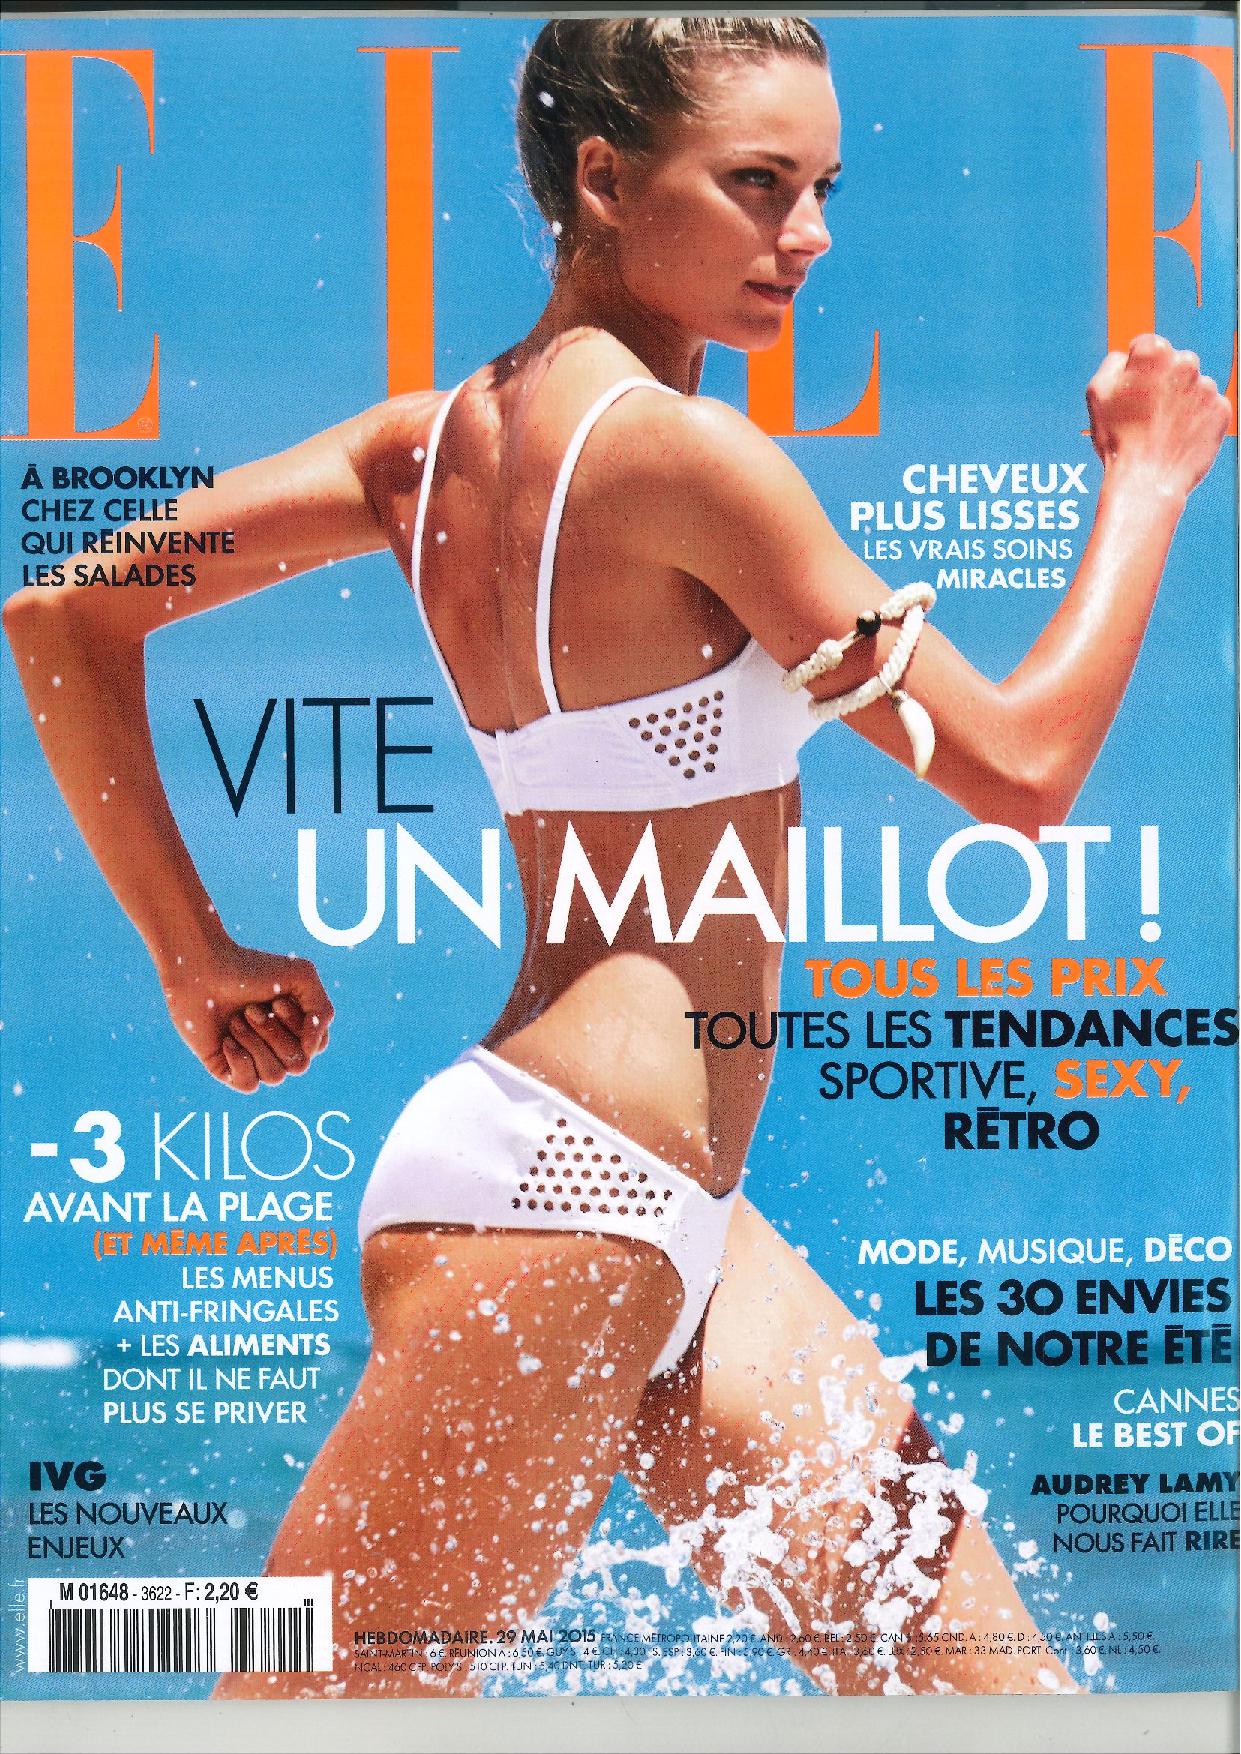 « L’odyssée du lisse », Magazine ELLE, Mai 2015